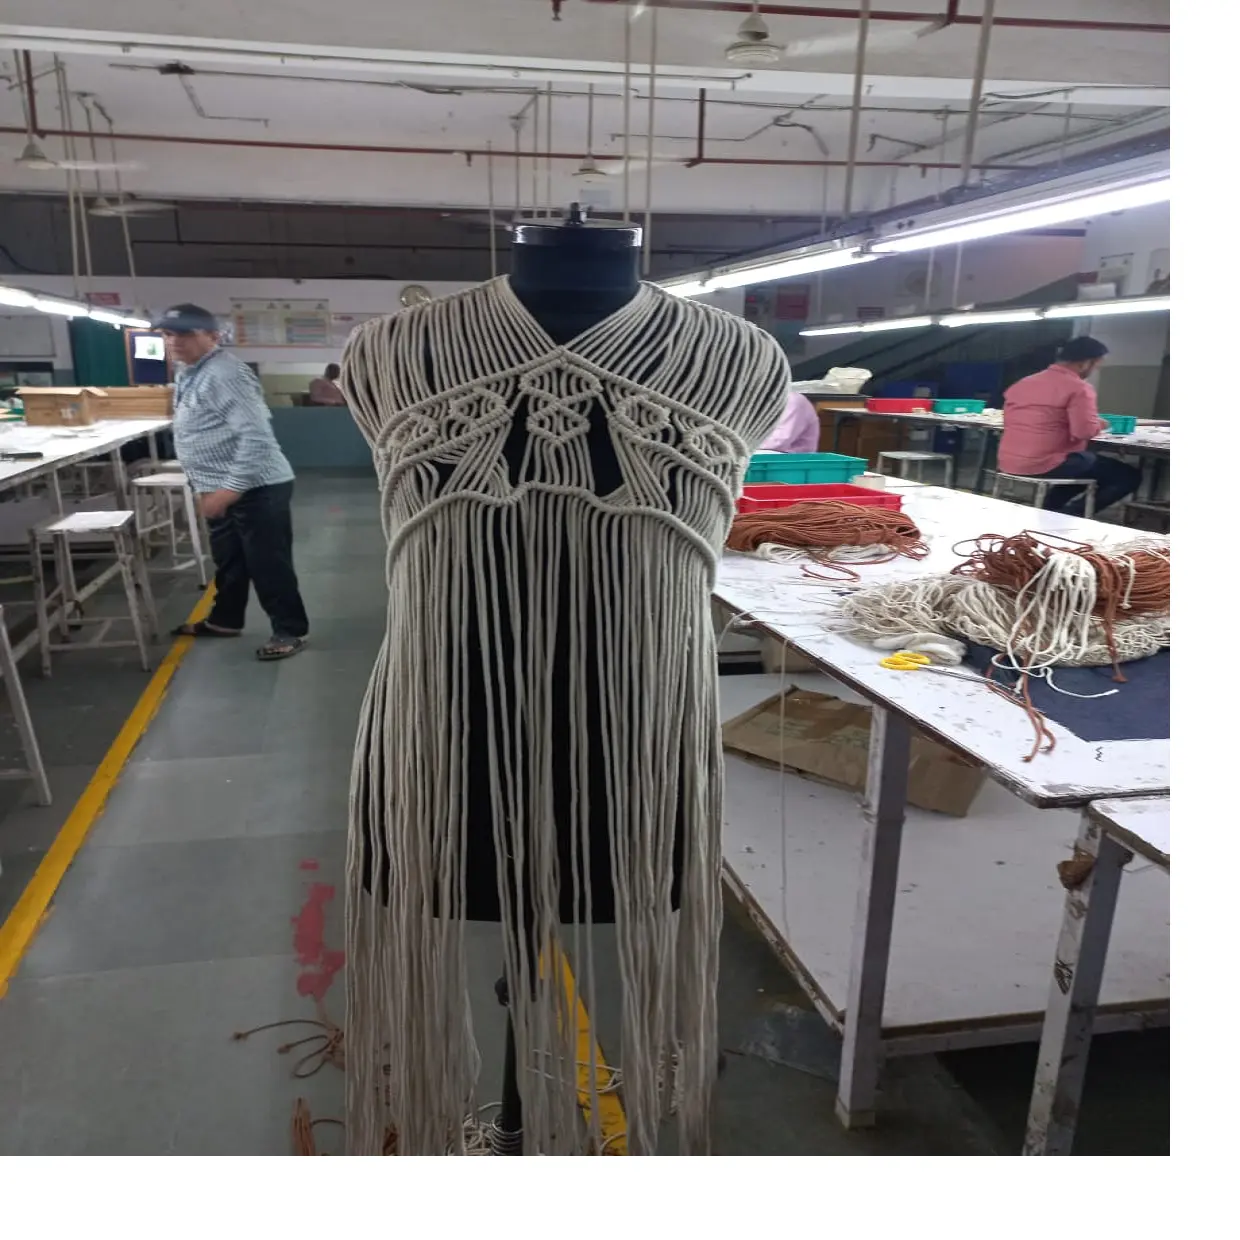 Vêtements et vêtements pour femmes au crochet 100% coton sur mesure fabriqués à partir de fil de coton 100%. Idéal pour la revente